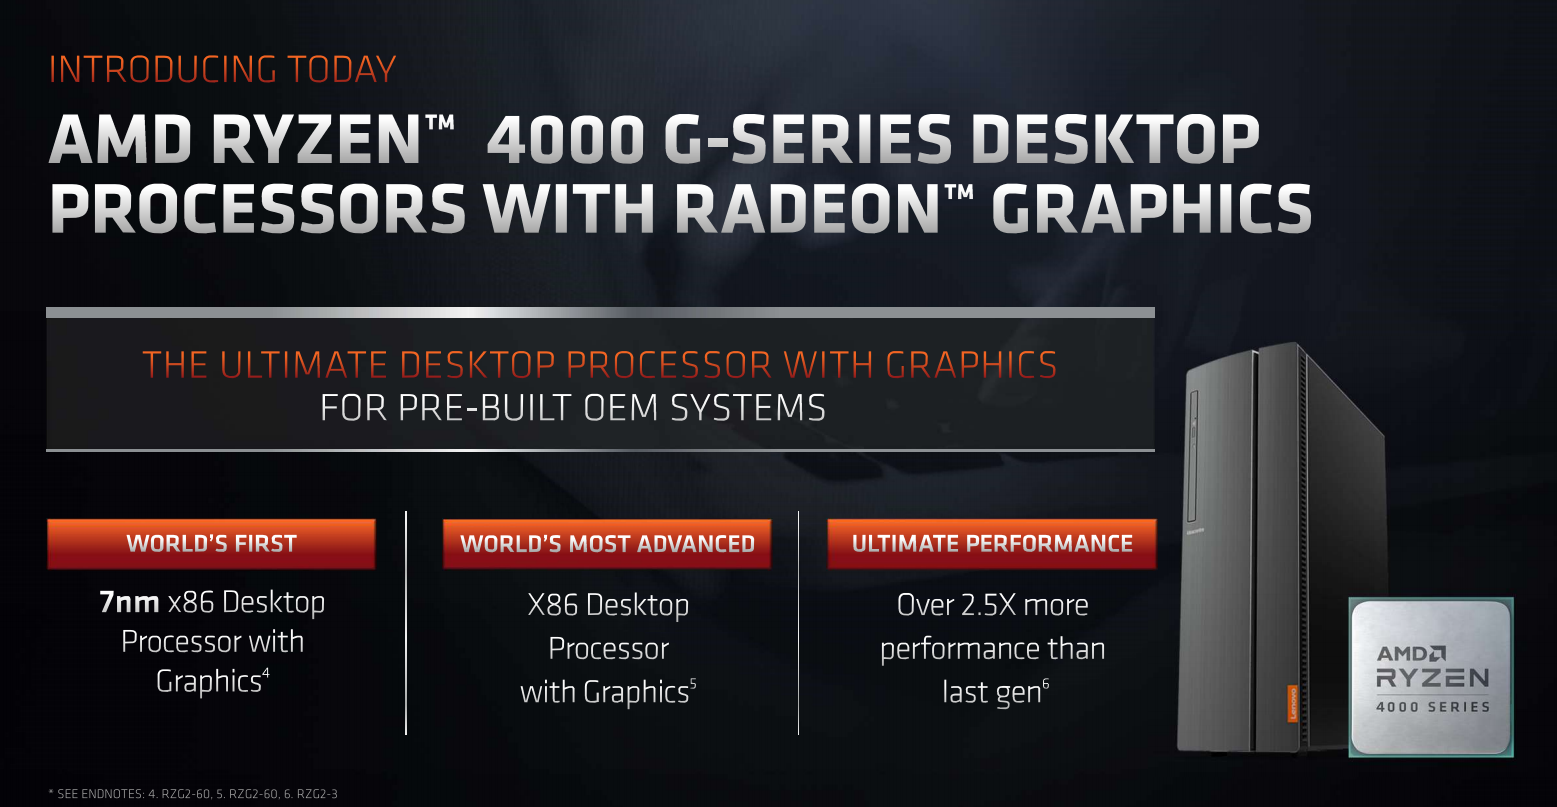 opleggen wacht Persoon belast met sportgame AMD announces Ryzen 4000 G-series processors - CPU - News - HEXUS.net